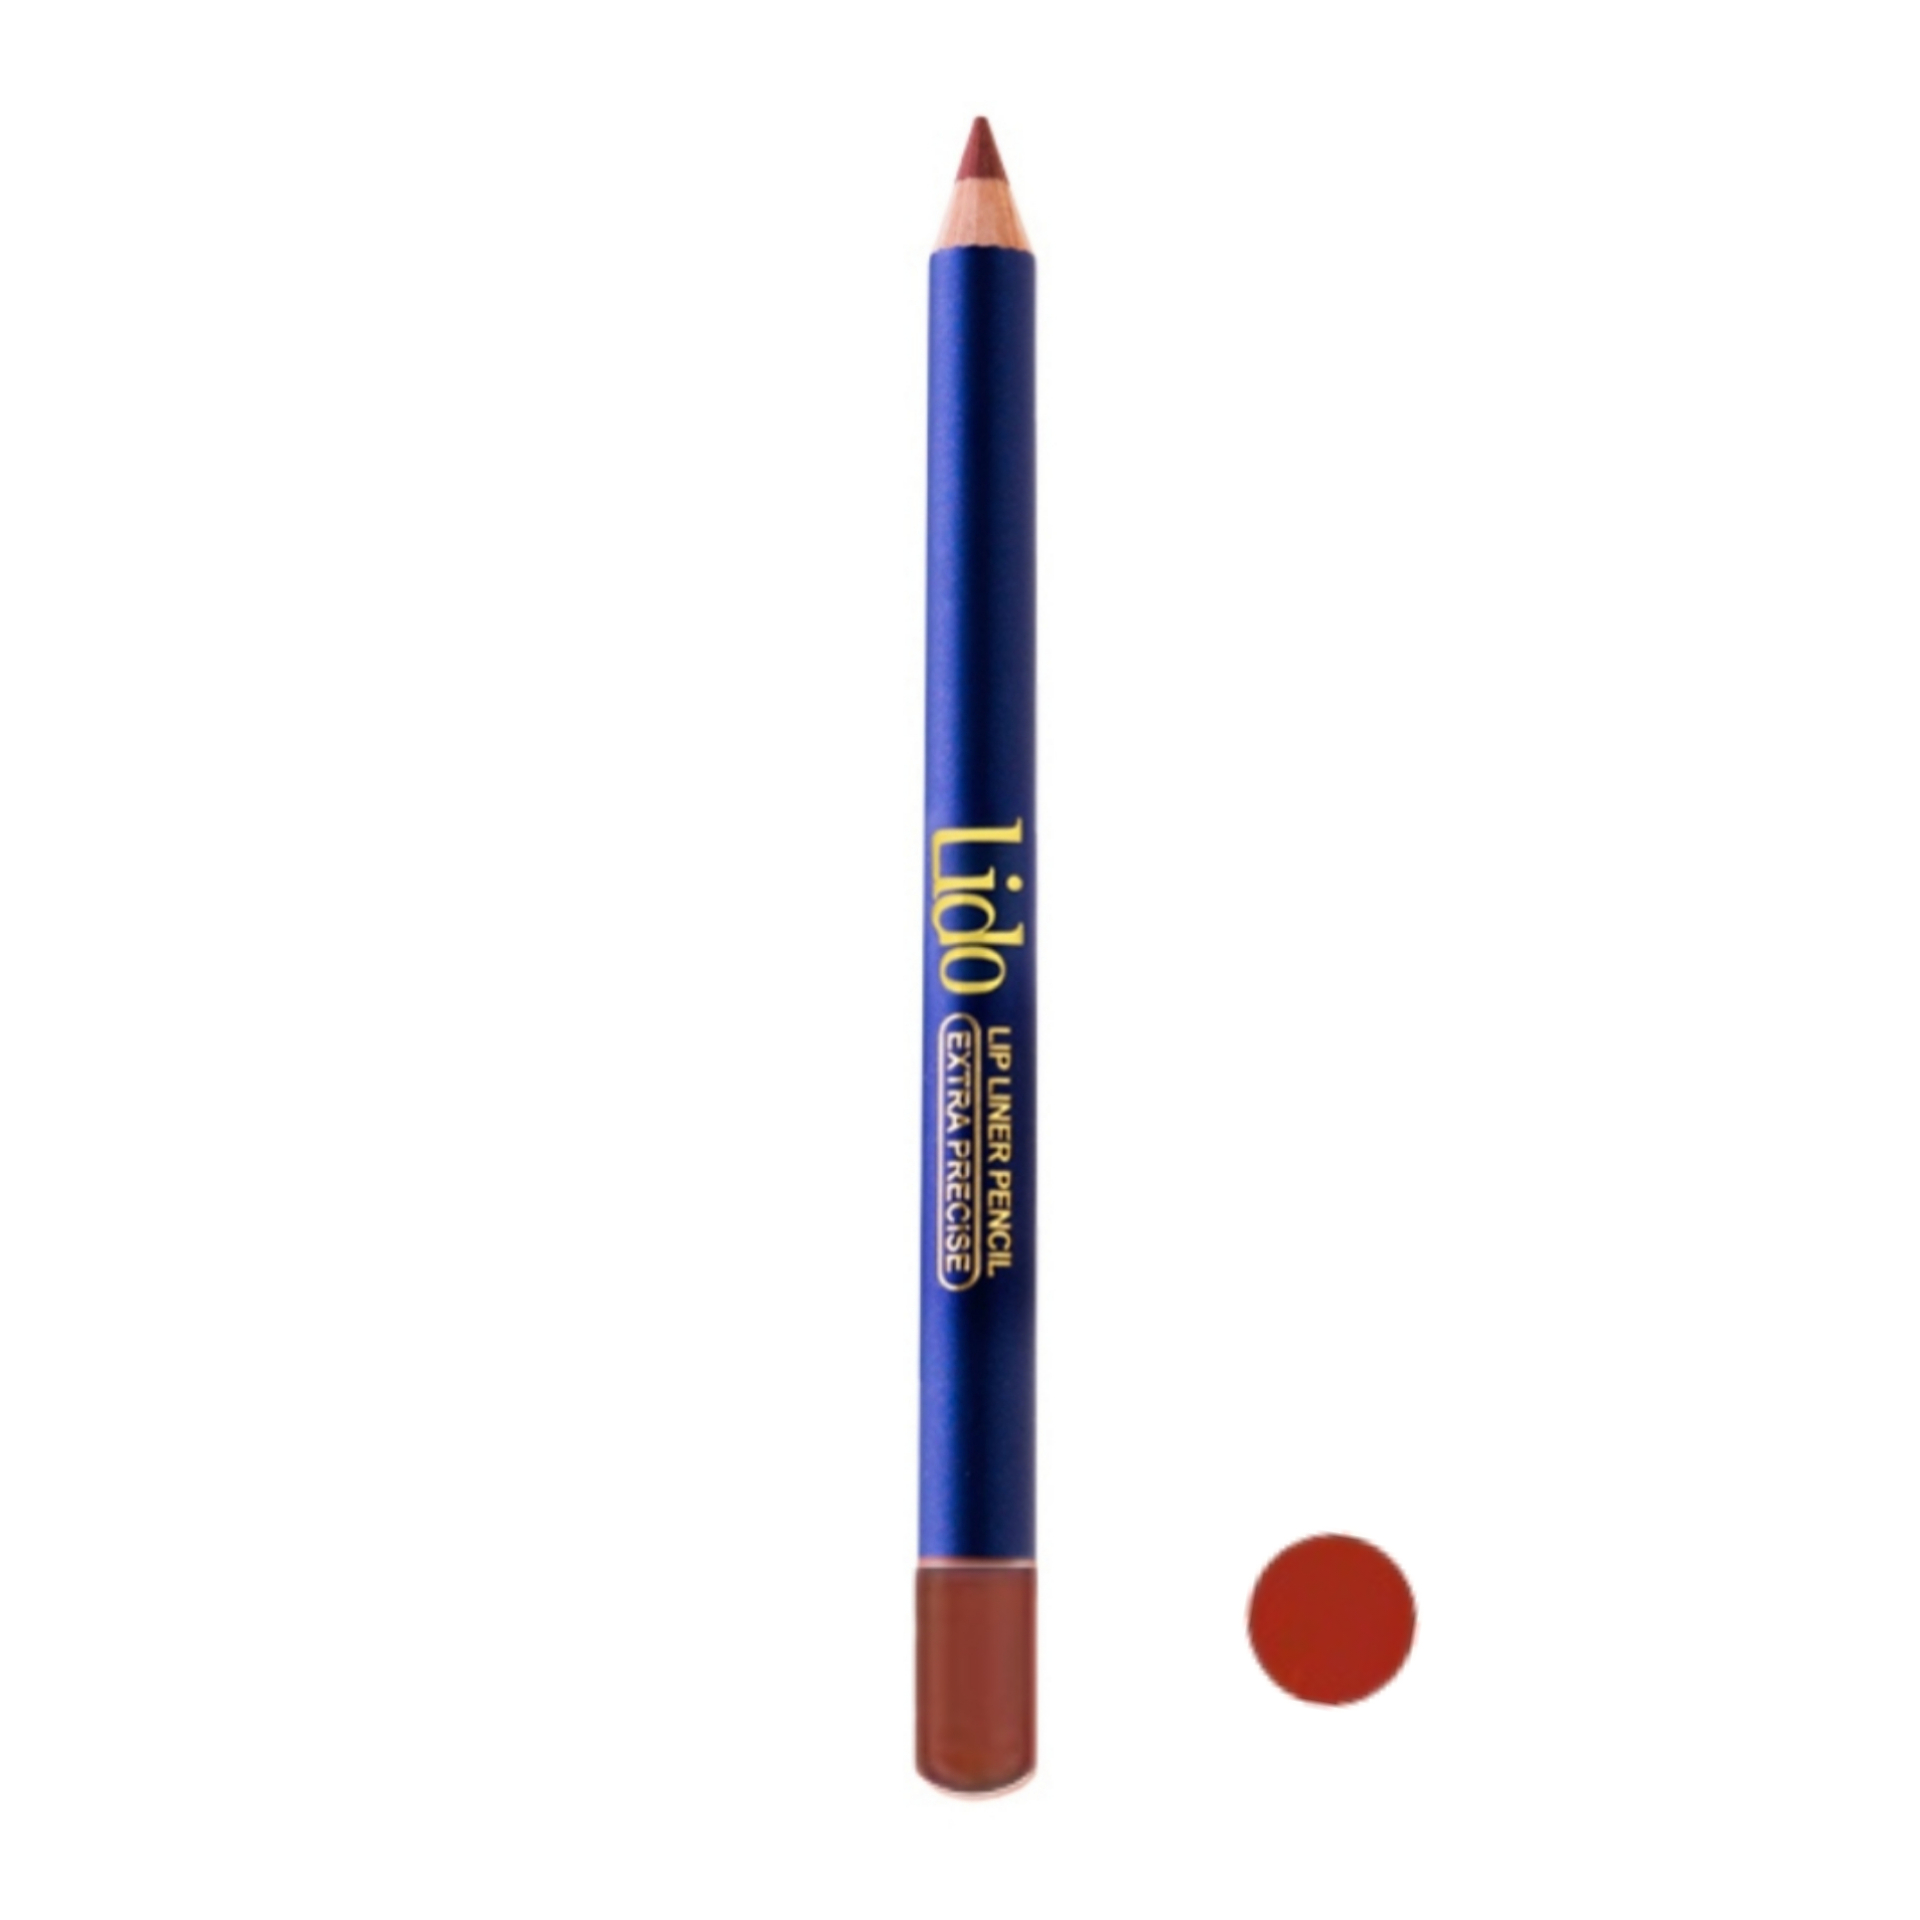 مداد لب لیدو مدل Extra precise شماره 505